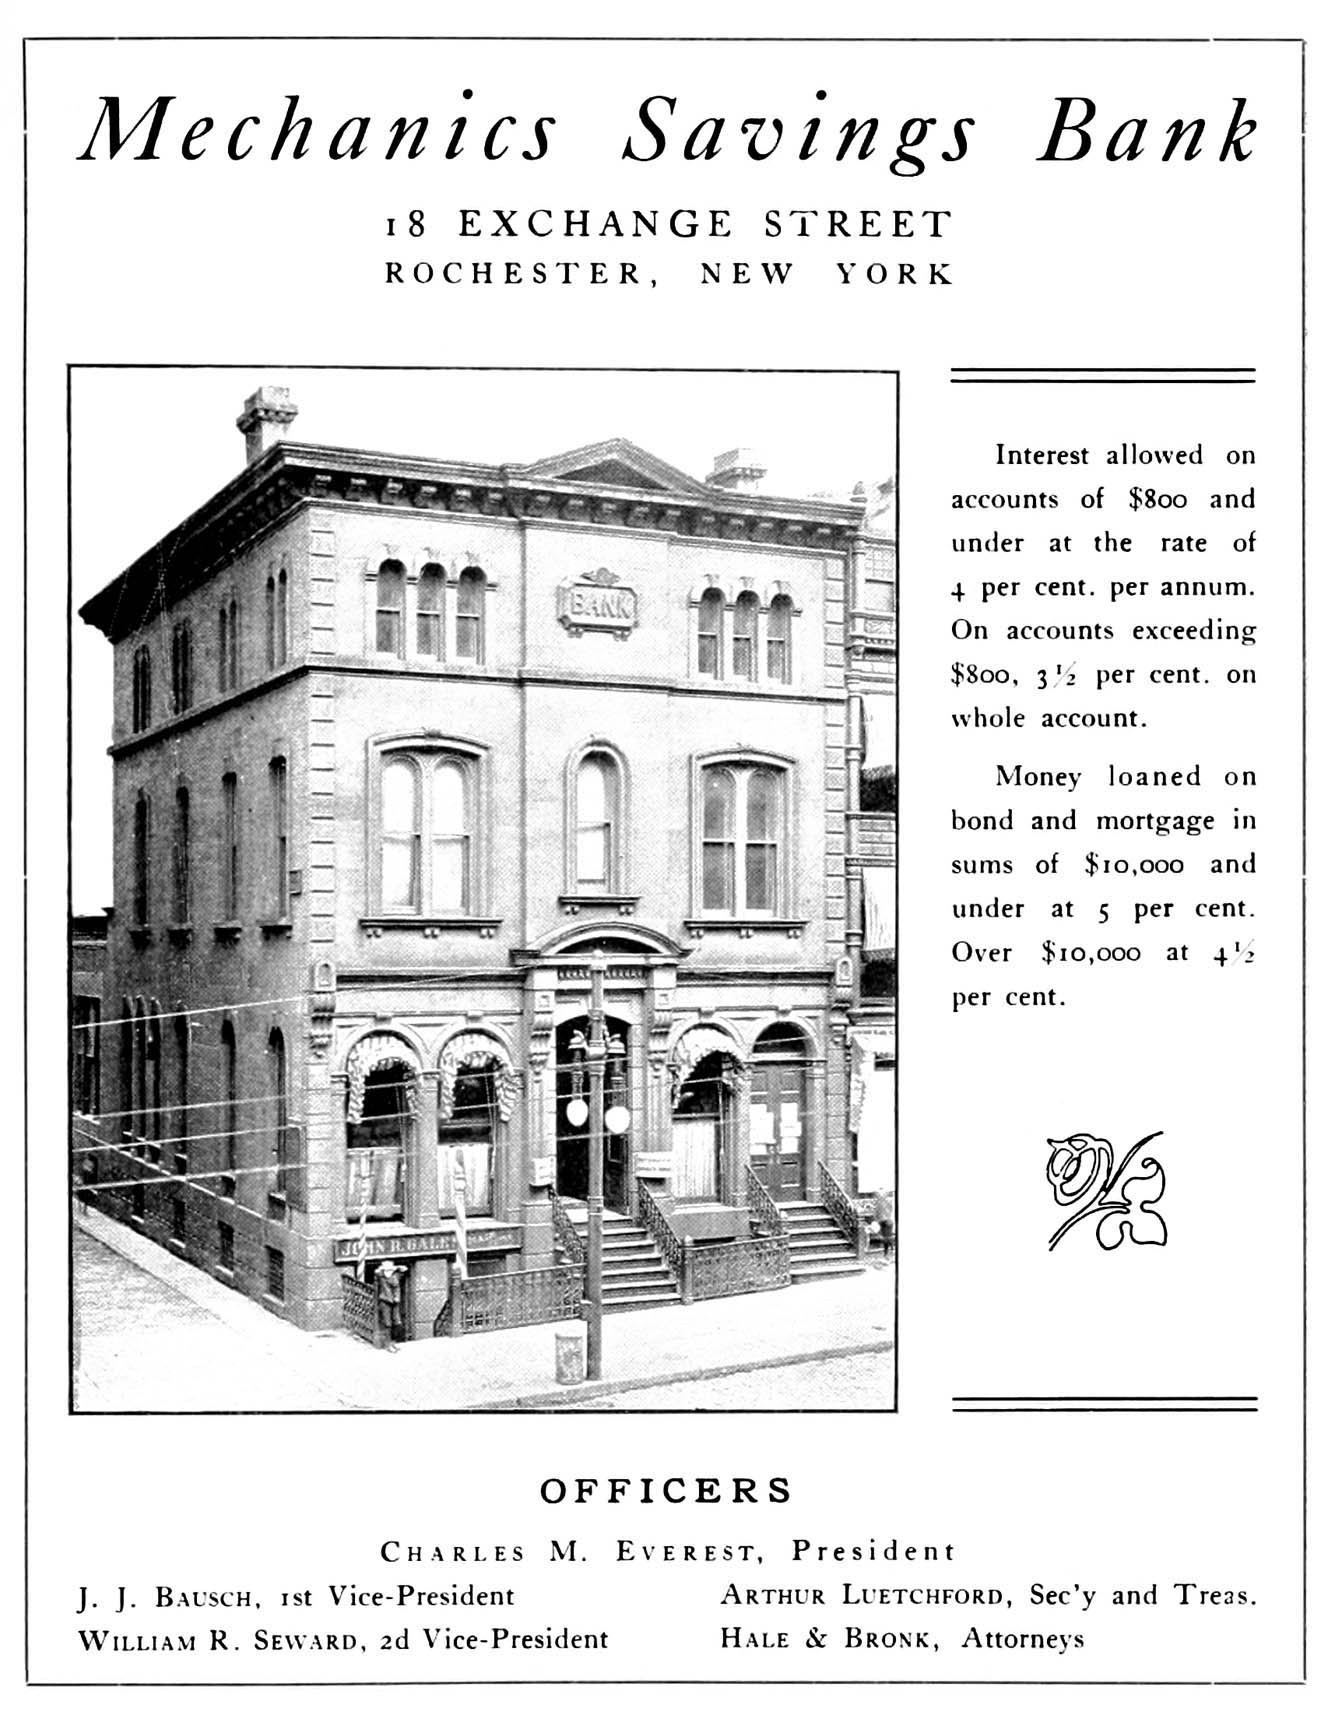 Mechanics Savings Bank - 1904